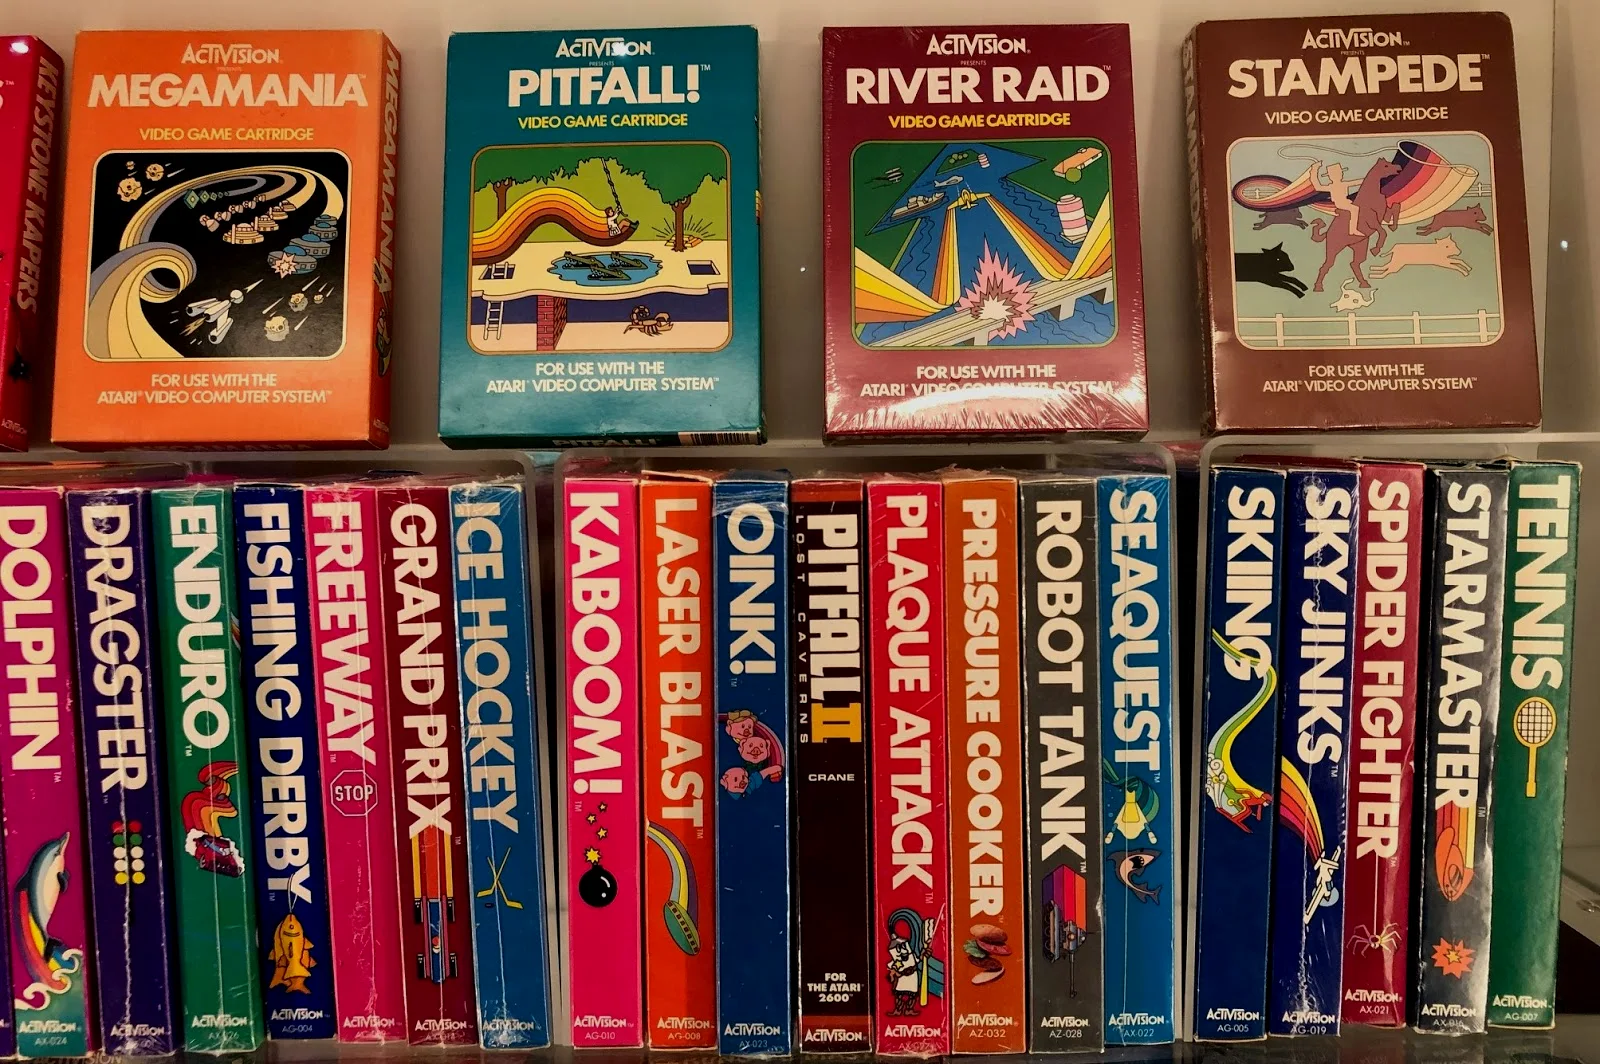 动视的游戏卡带包装风格与LOGO上的彩虹一脉相承，下排中间《PITFALL II》上五个小小的字母CRANE严肃、可爱而令人感动